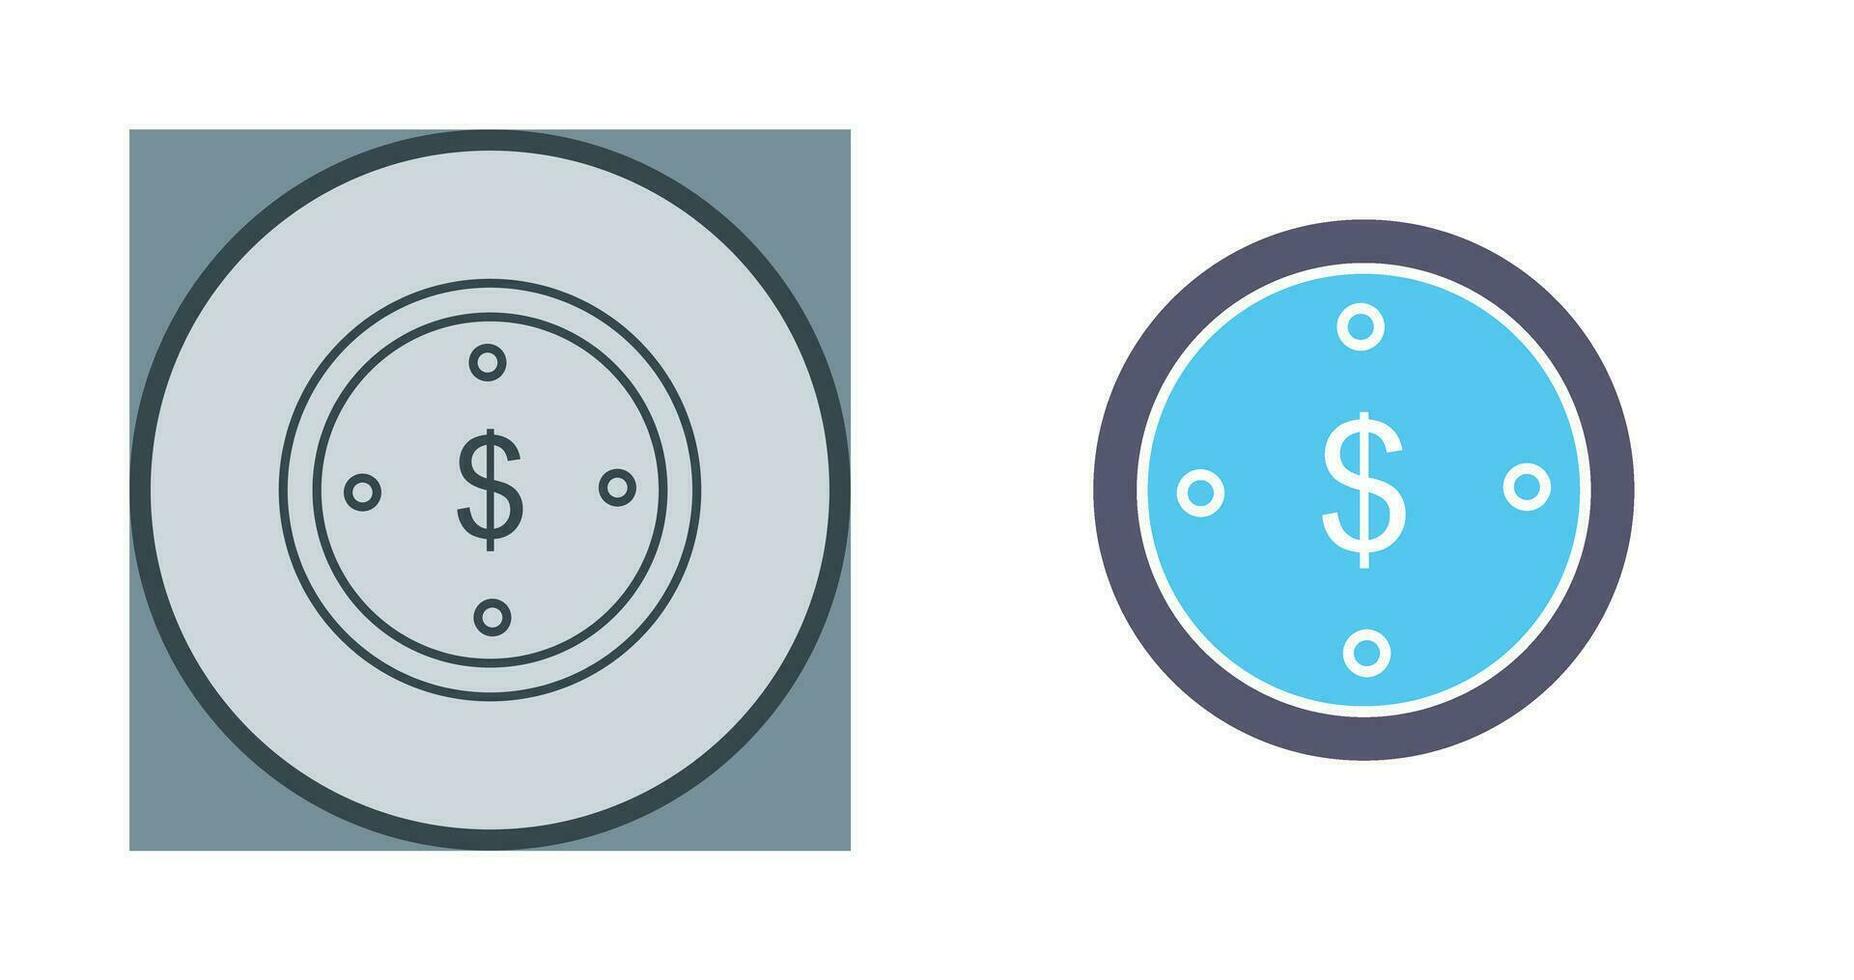 ícone de vetor de moeda de dólar